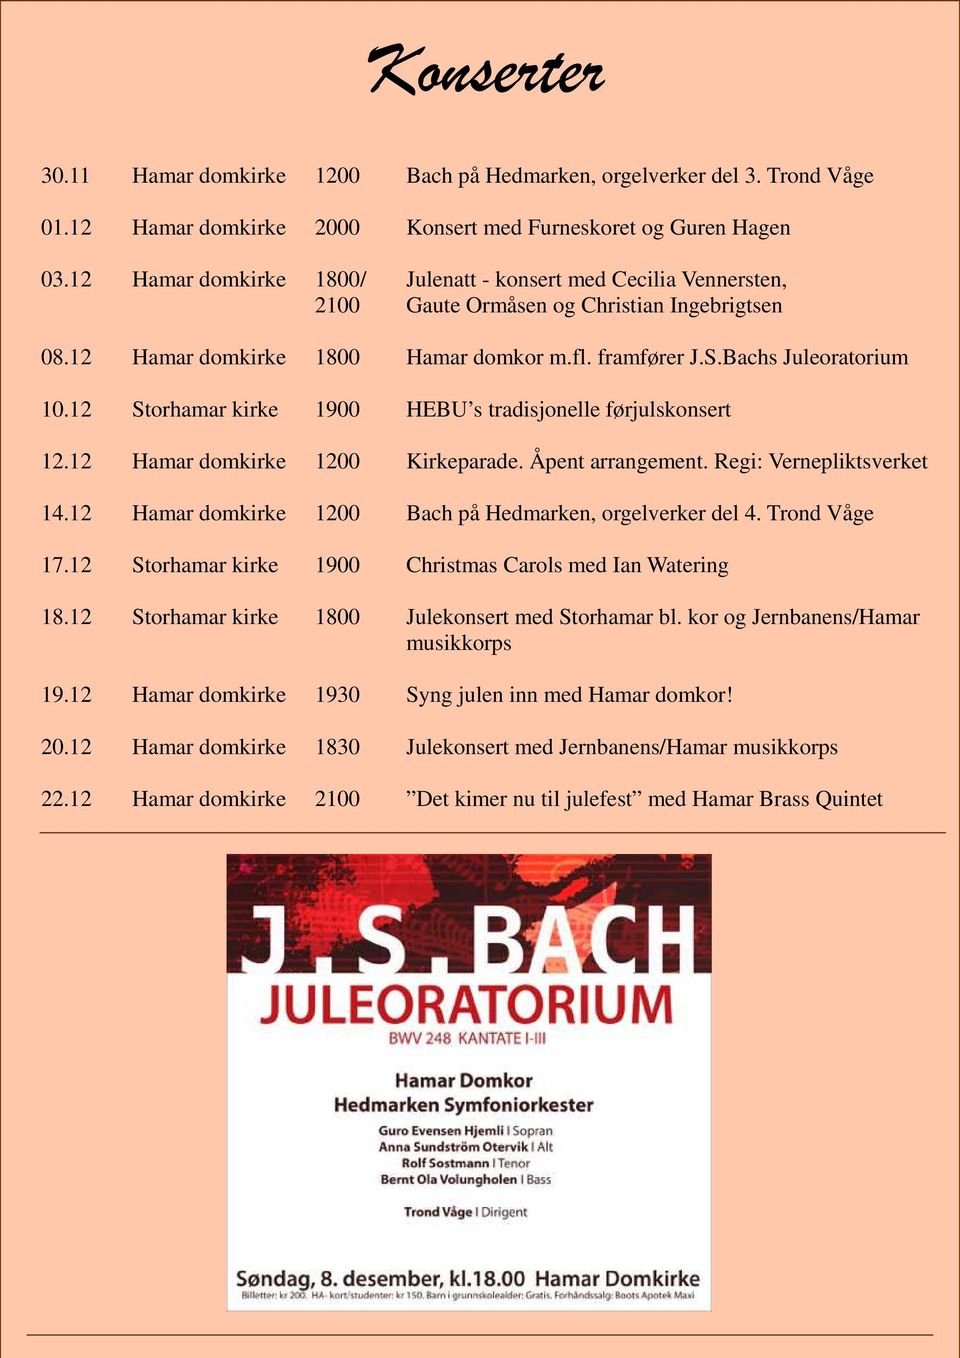 fl. framfører Kåre J.S.Bachs Nordstoga Juleoratorium og fiolinist Geir Inge Lotsberg som spiller Bachs sonater for fiolin 10.12 Storhamar kirke 1900 HEBU s og orgel. tradisjonelle førjulskonsert 12.